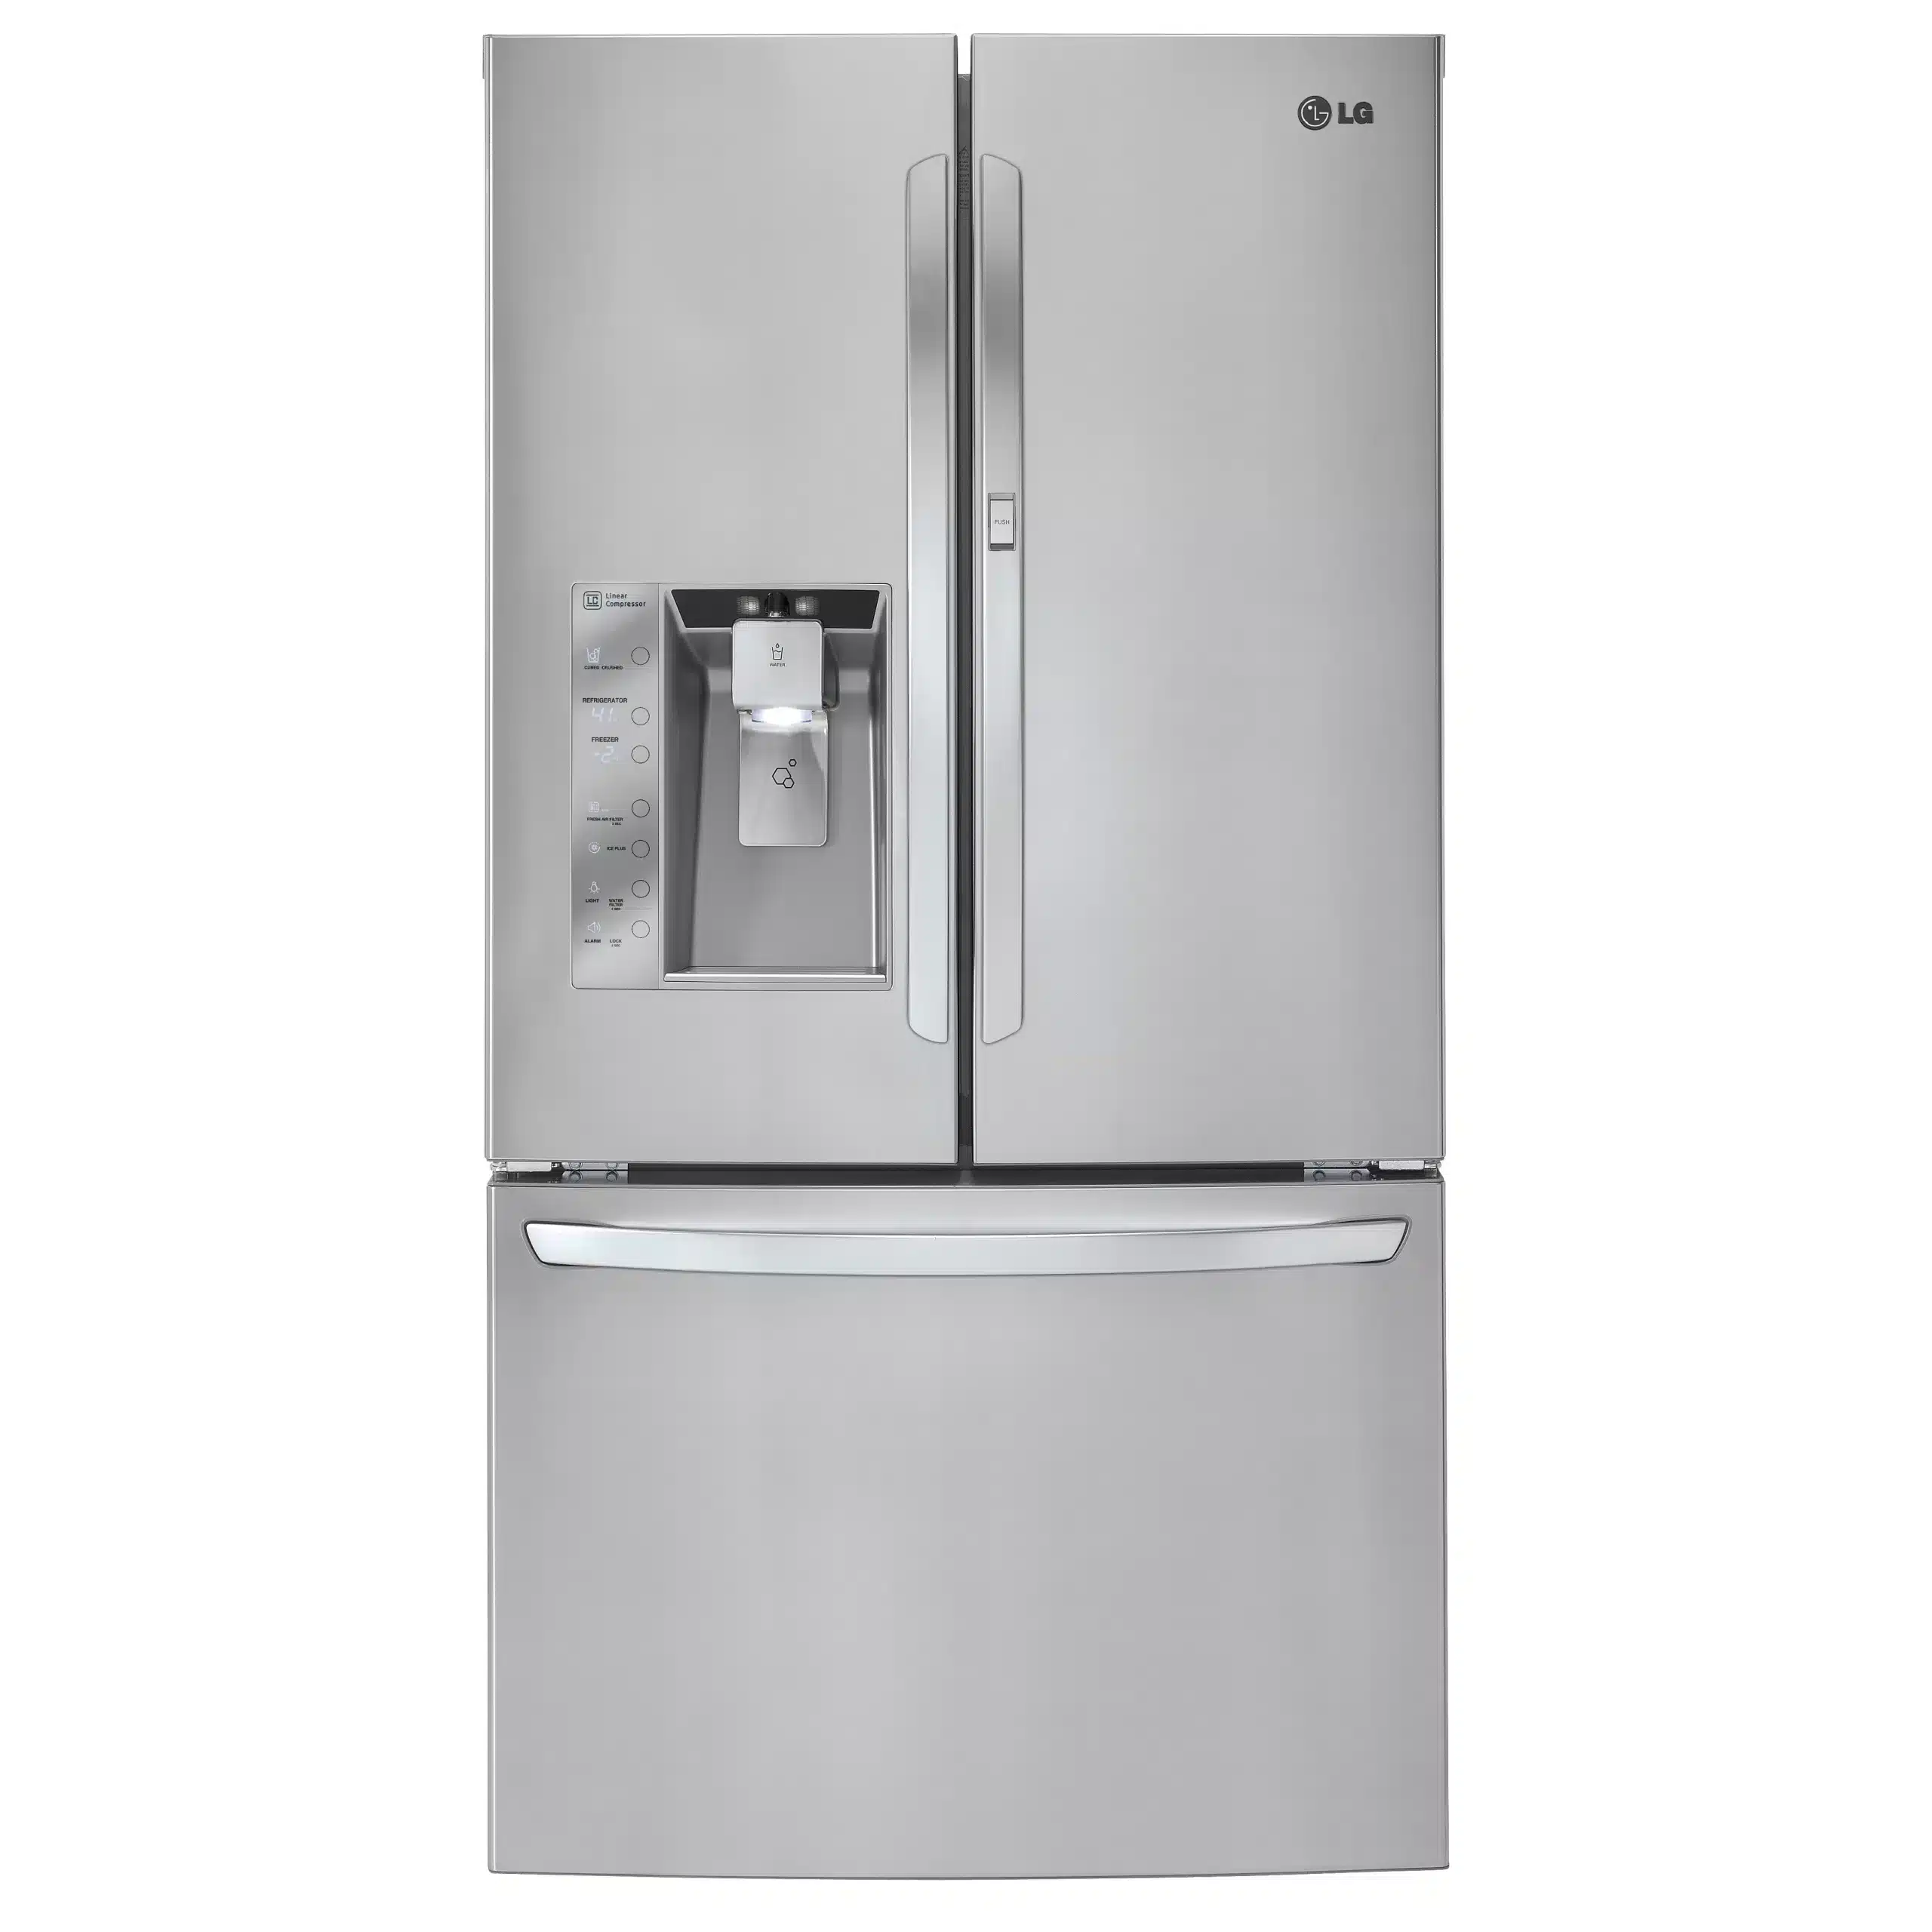 how-to-reset-a-lg-refrigerator